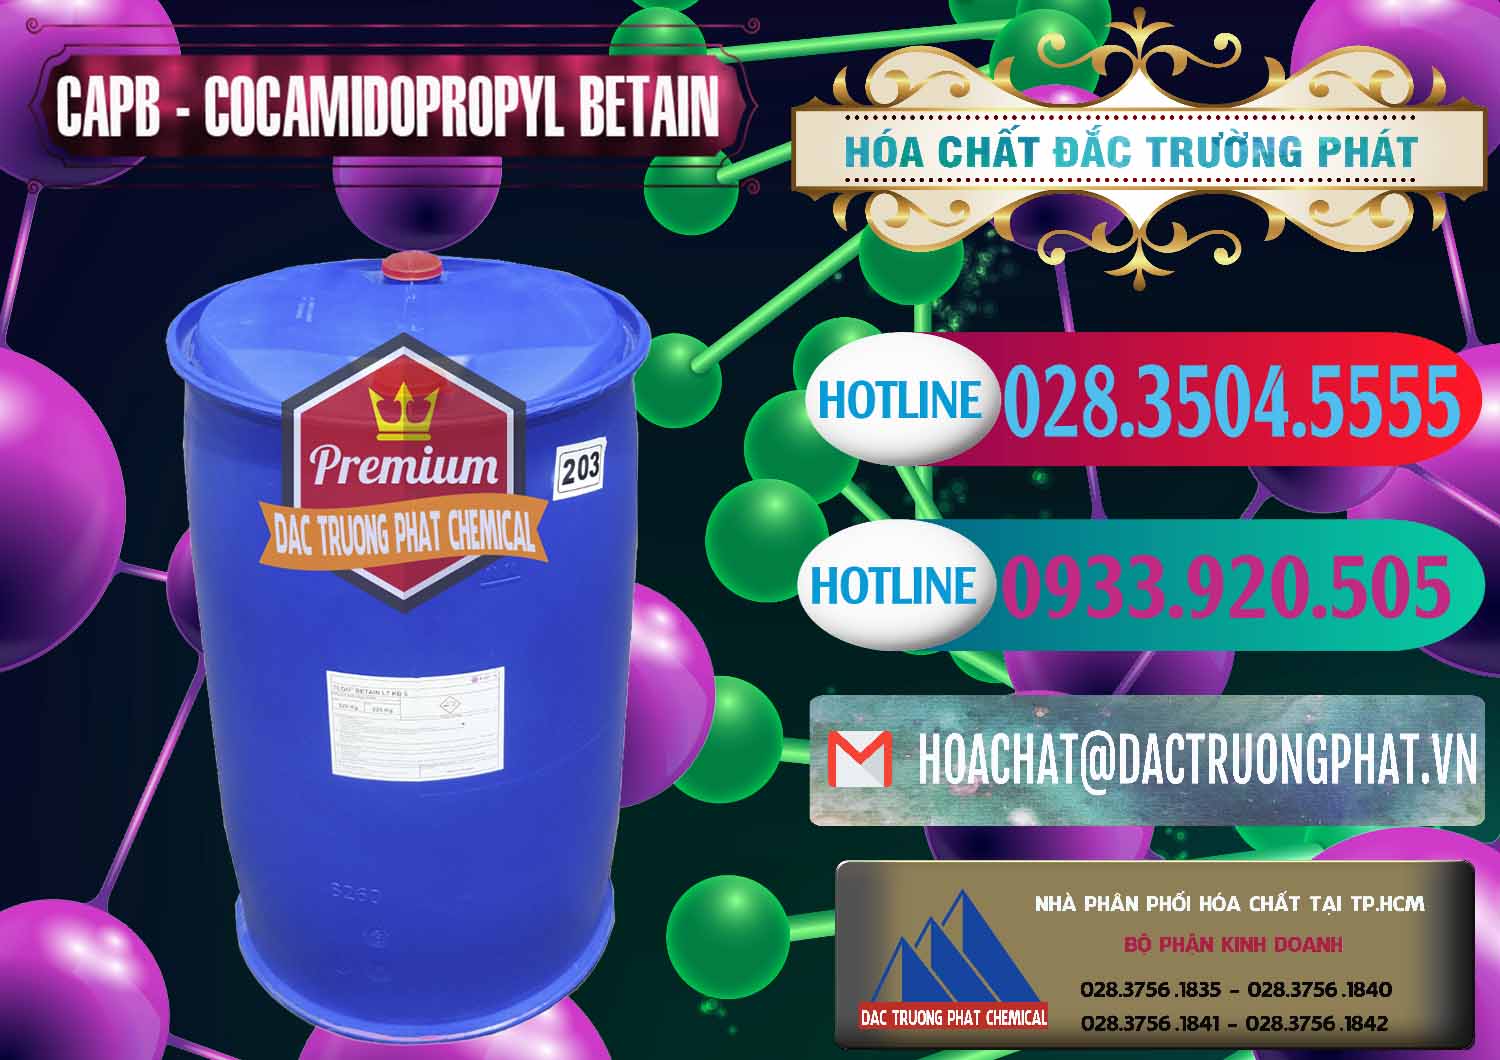 Chuyên bán ( cung ứng ) Cocamidopropyl Betaine - CAPB Tego Indonesia - 0327 - Nơi chuyên cung ứng và phân phối hóa chất tại TP.HCM - truongphat.vn